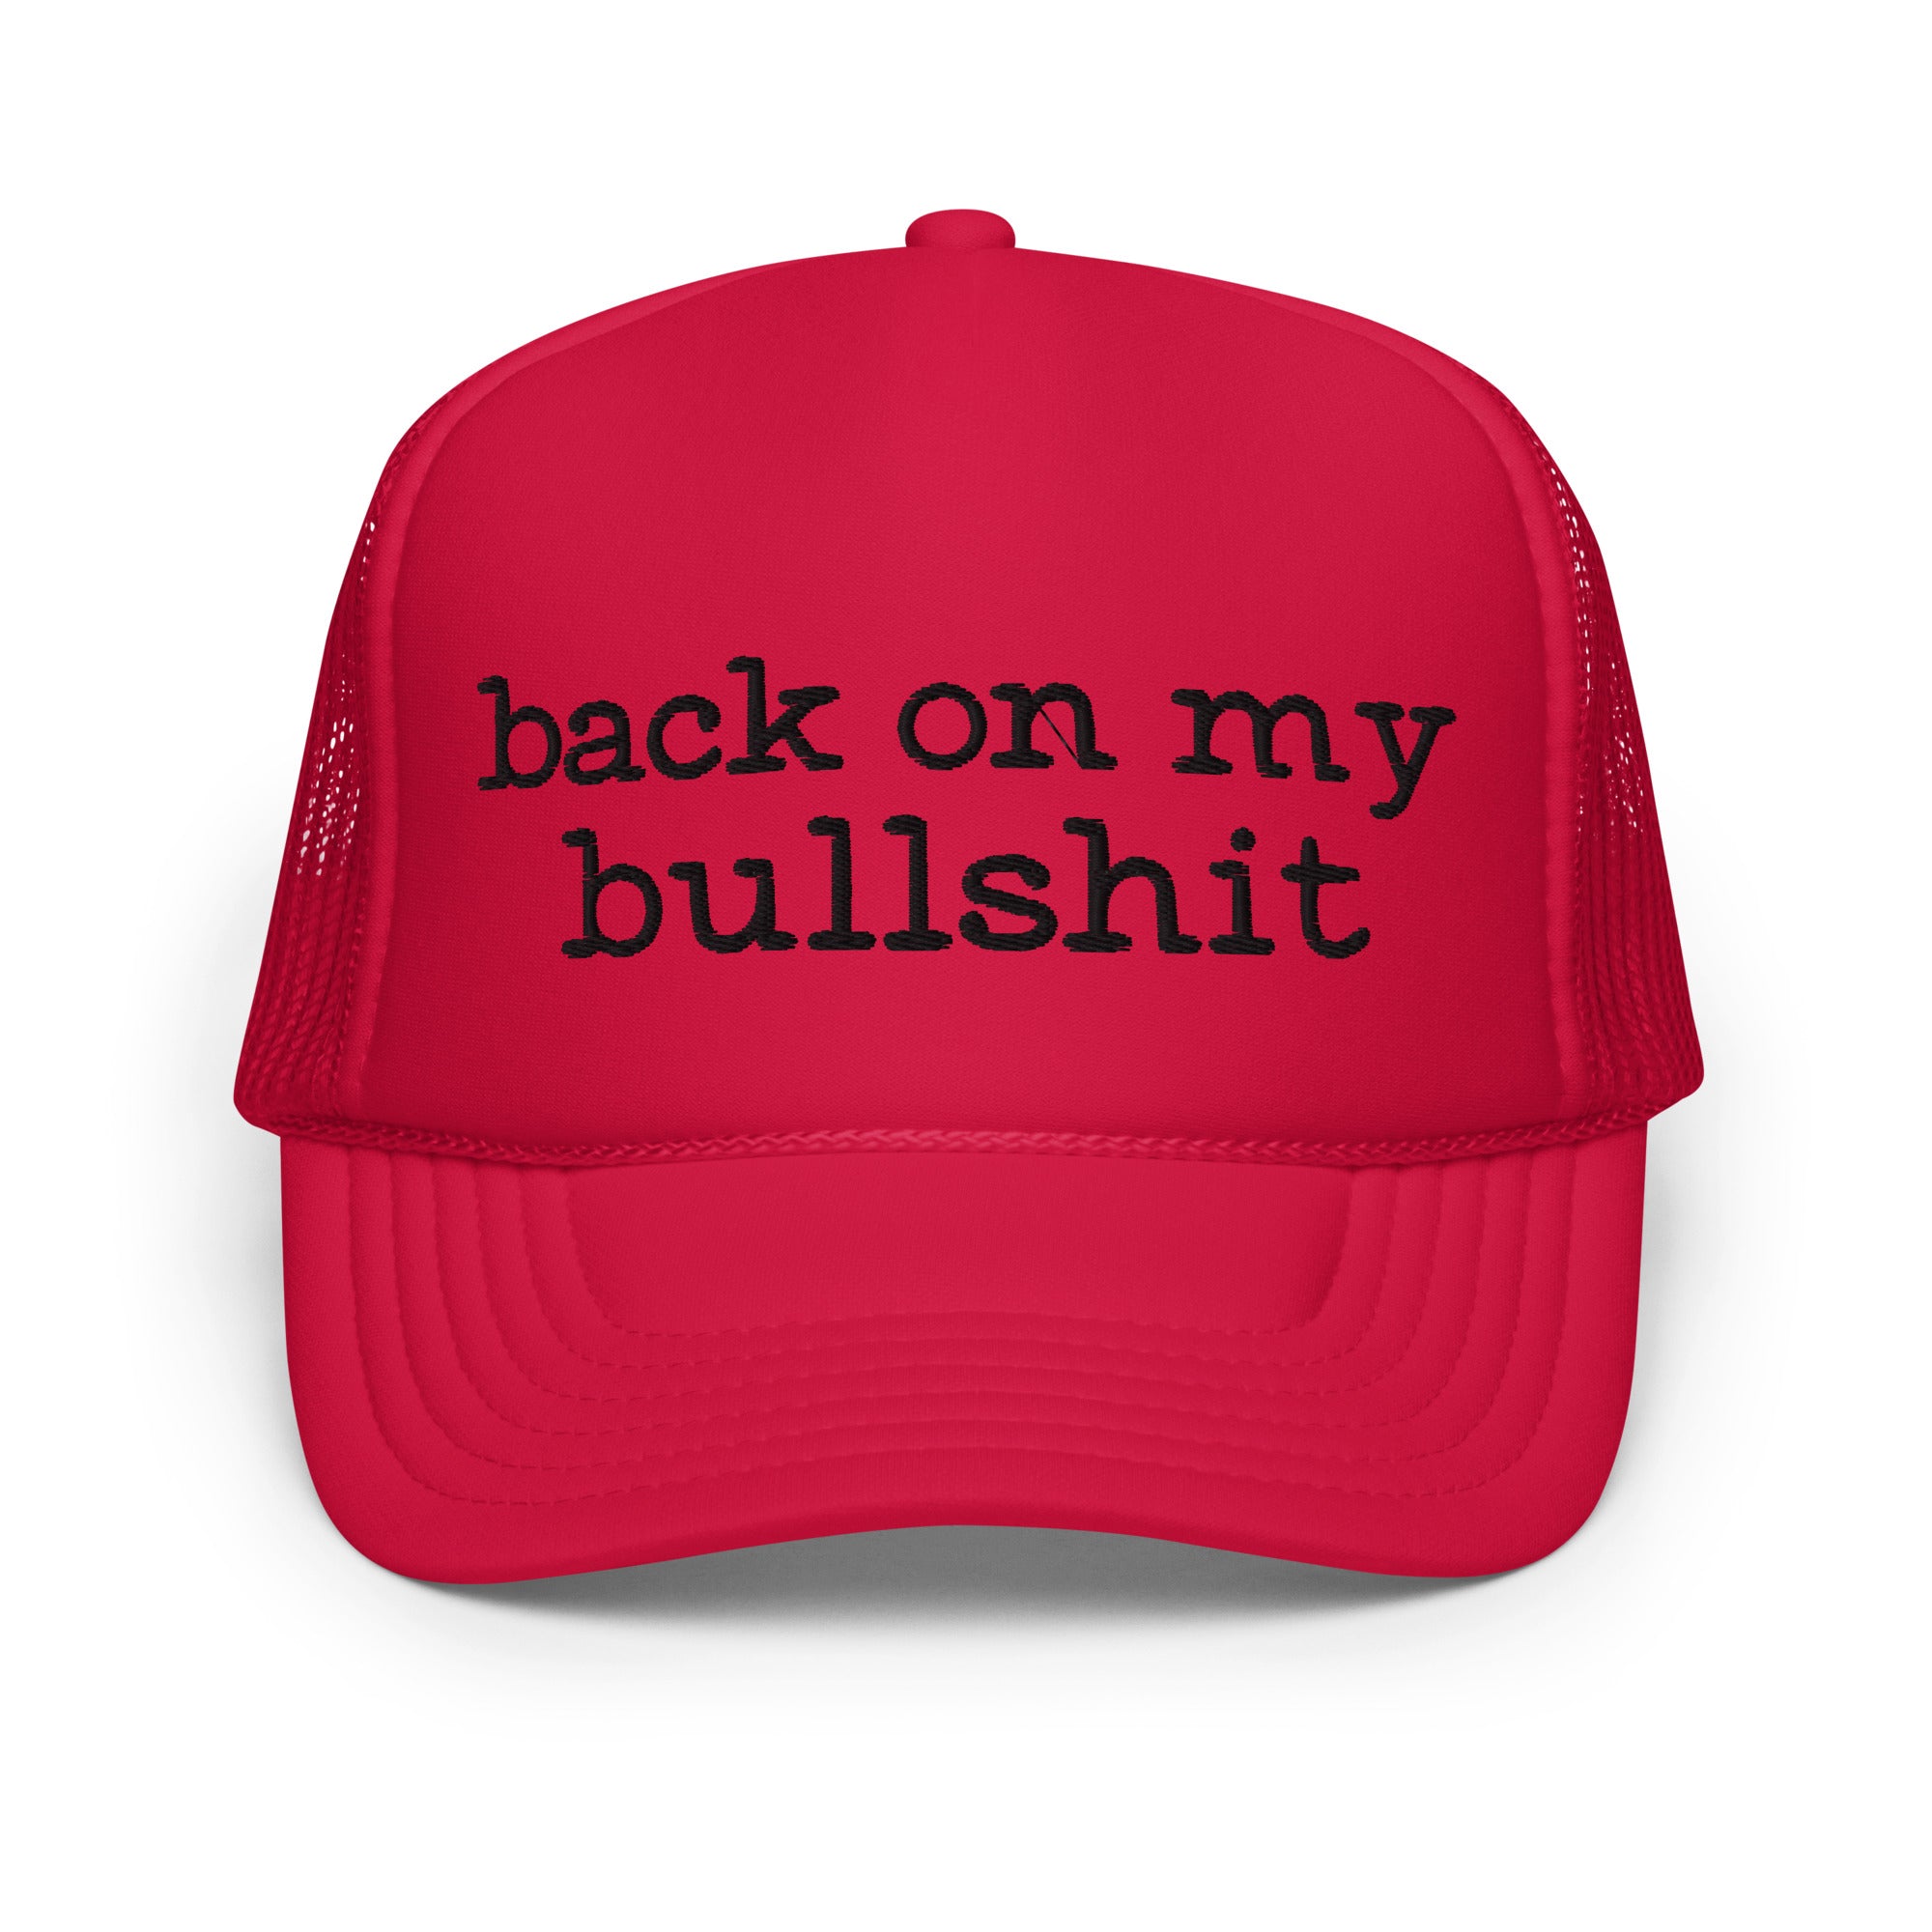 Back On My Bullshit (Foam trucker hat)